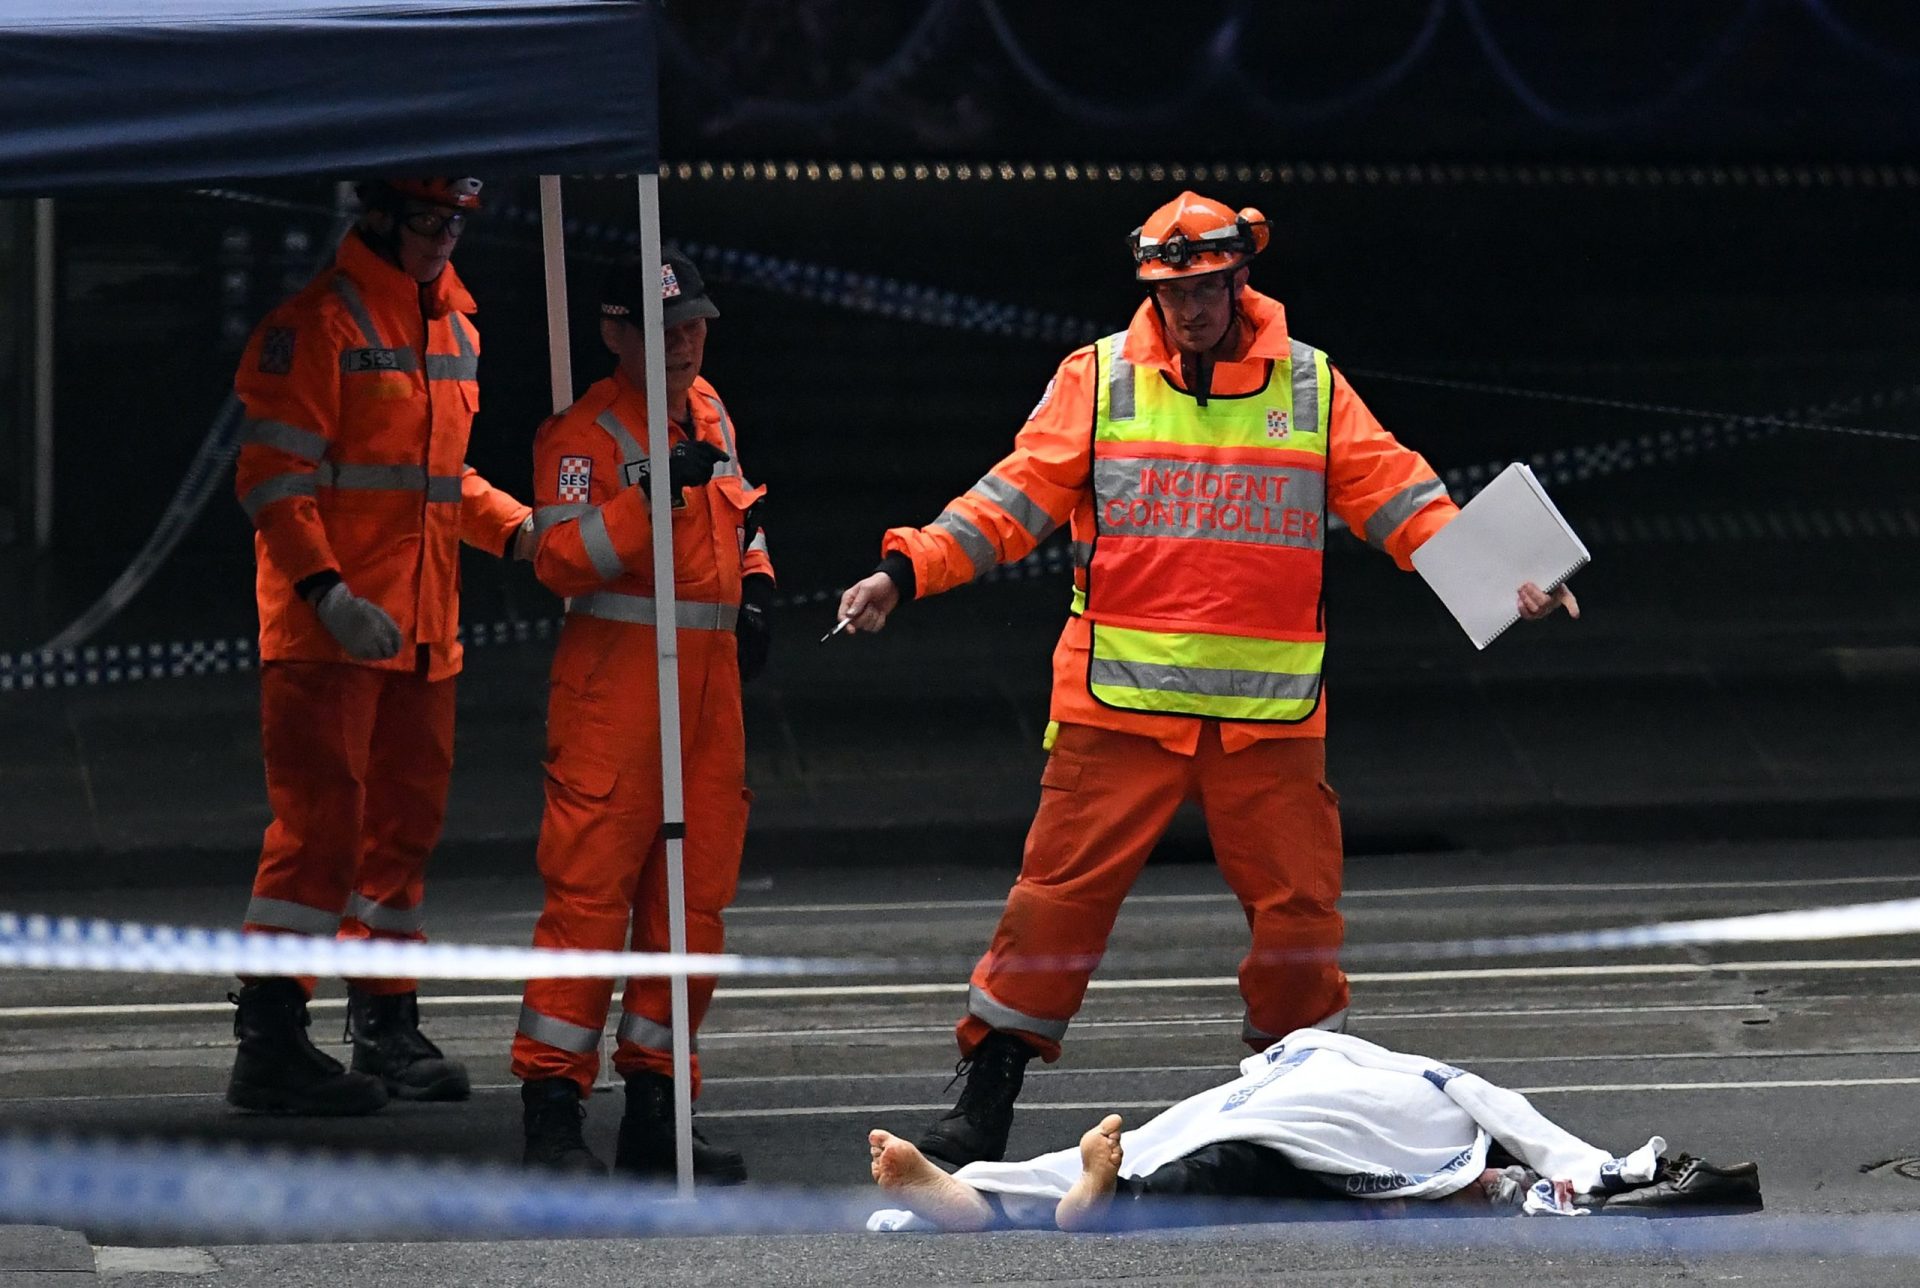 Estado Islâmico reivindica ataque em Melbourne | Vídeo